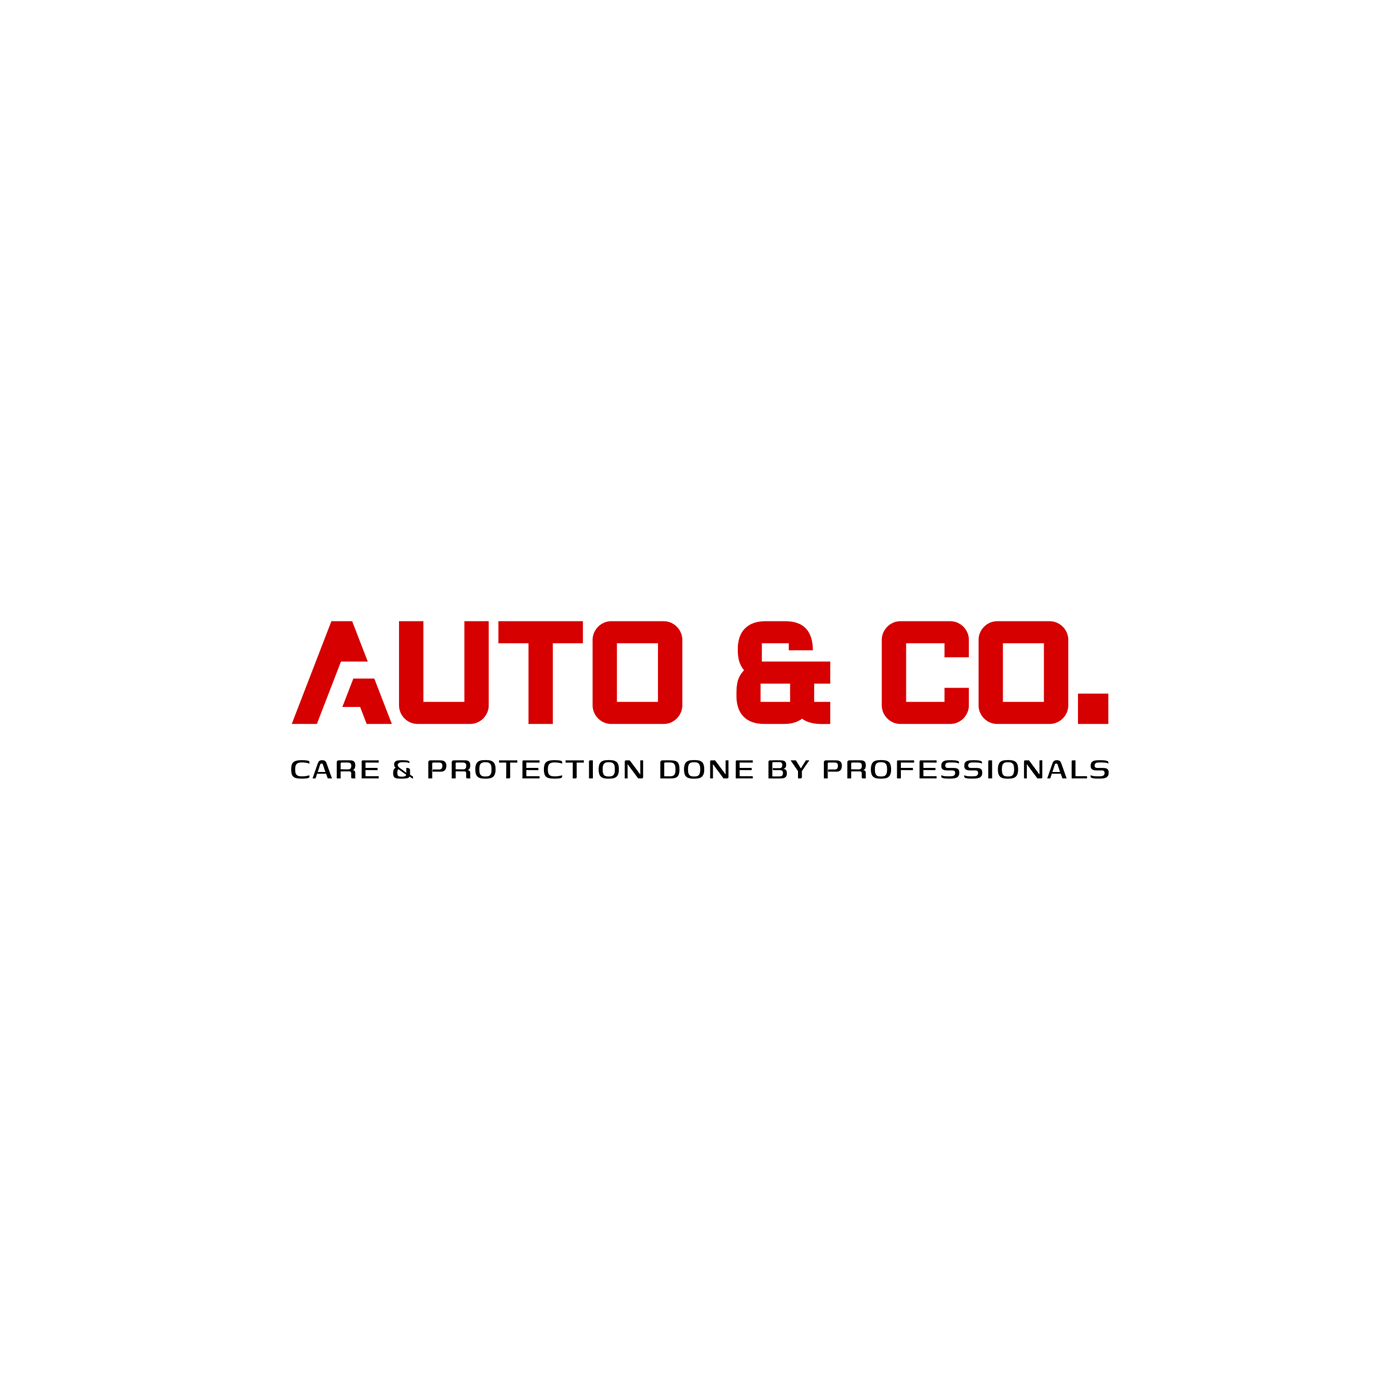 Auto auto company Auto services brand identity car logo